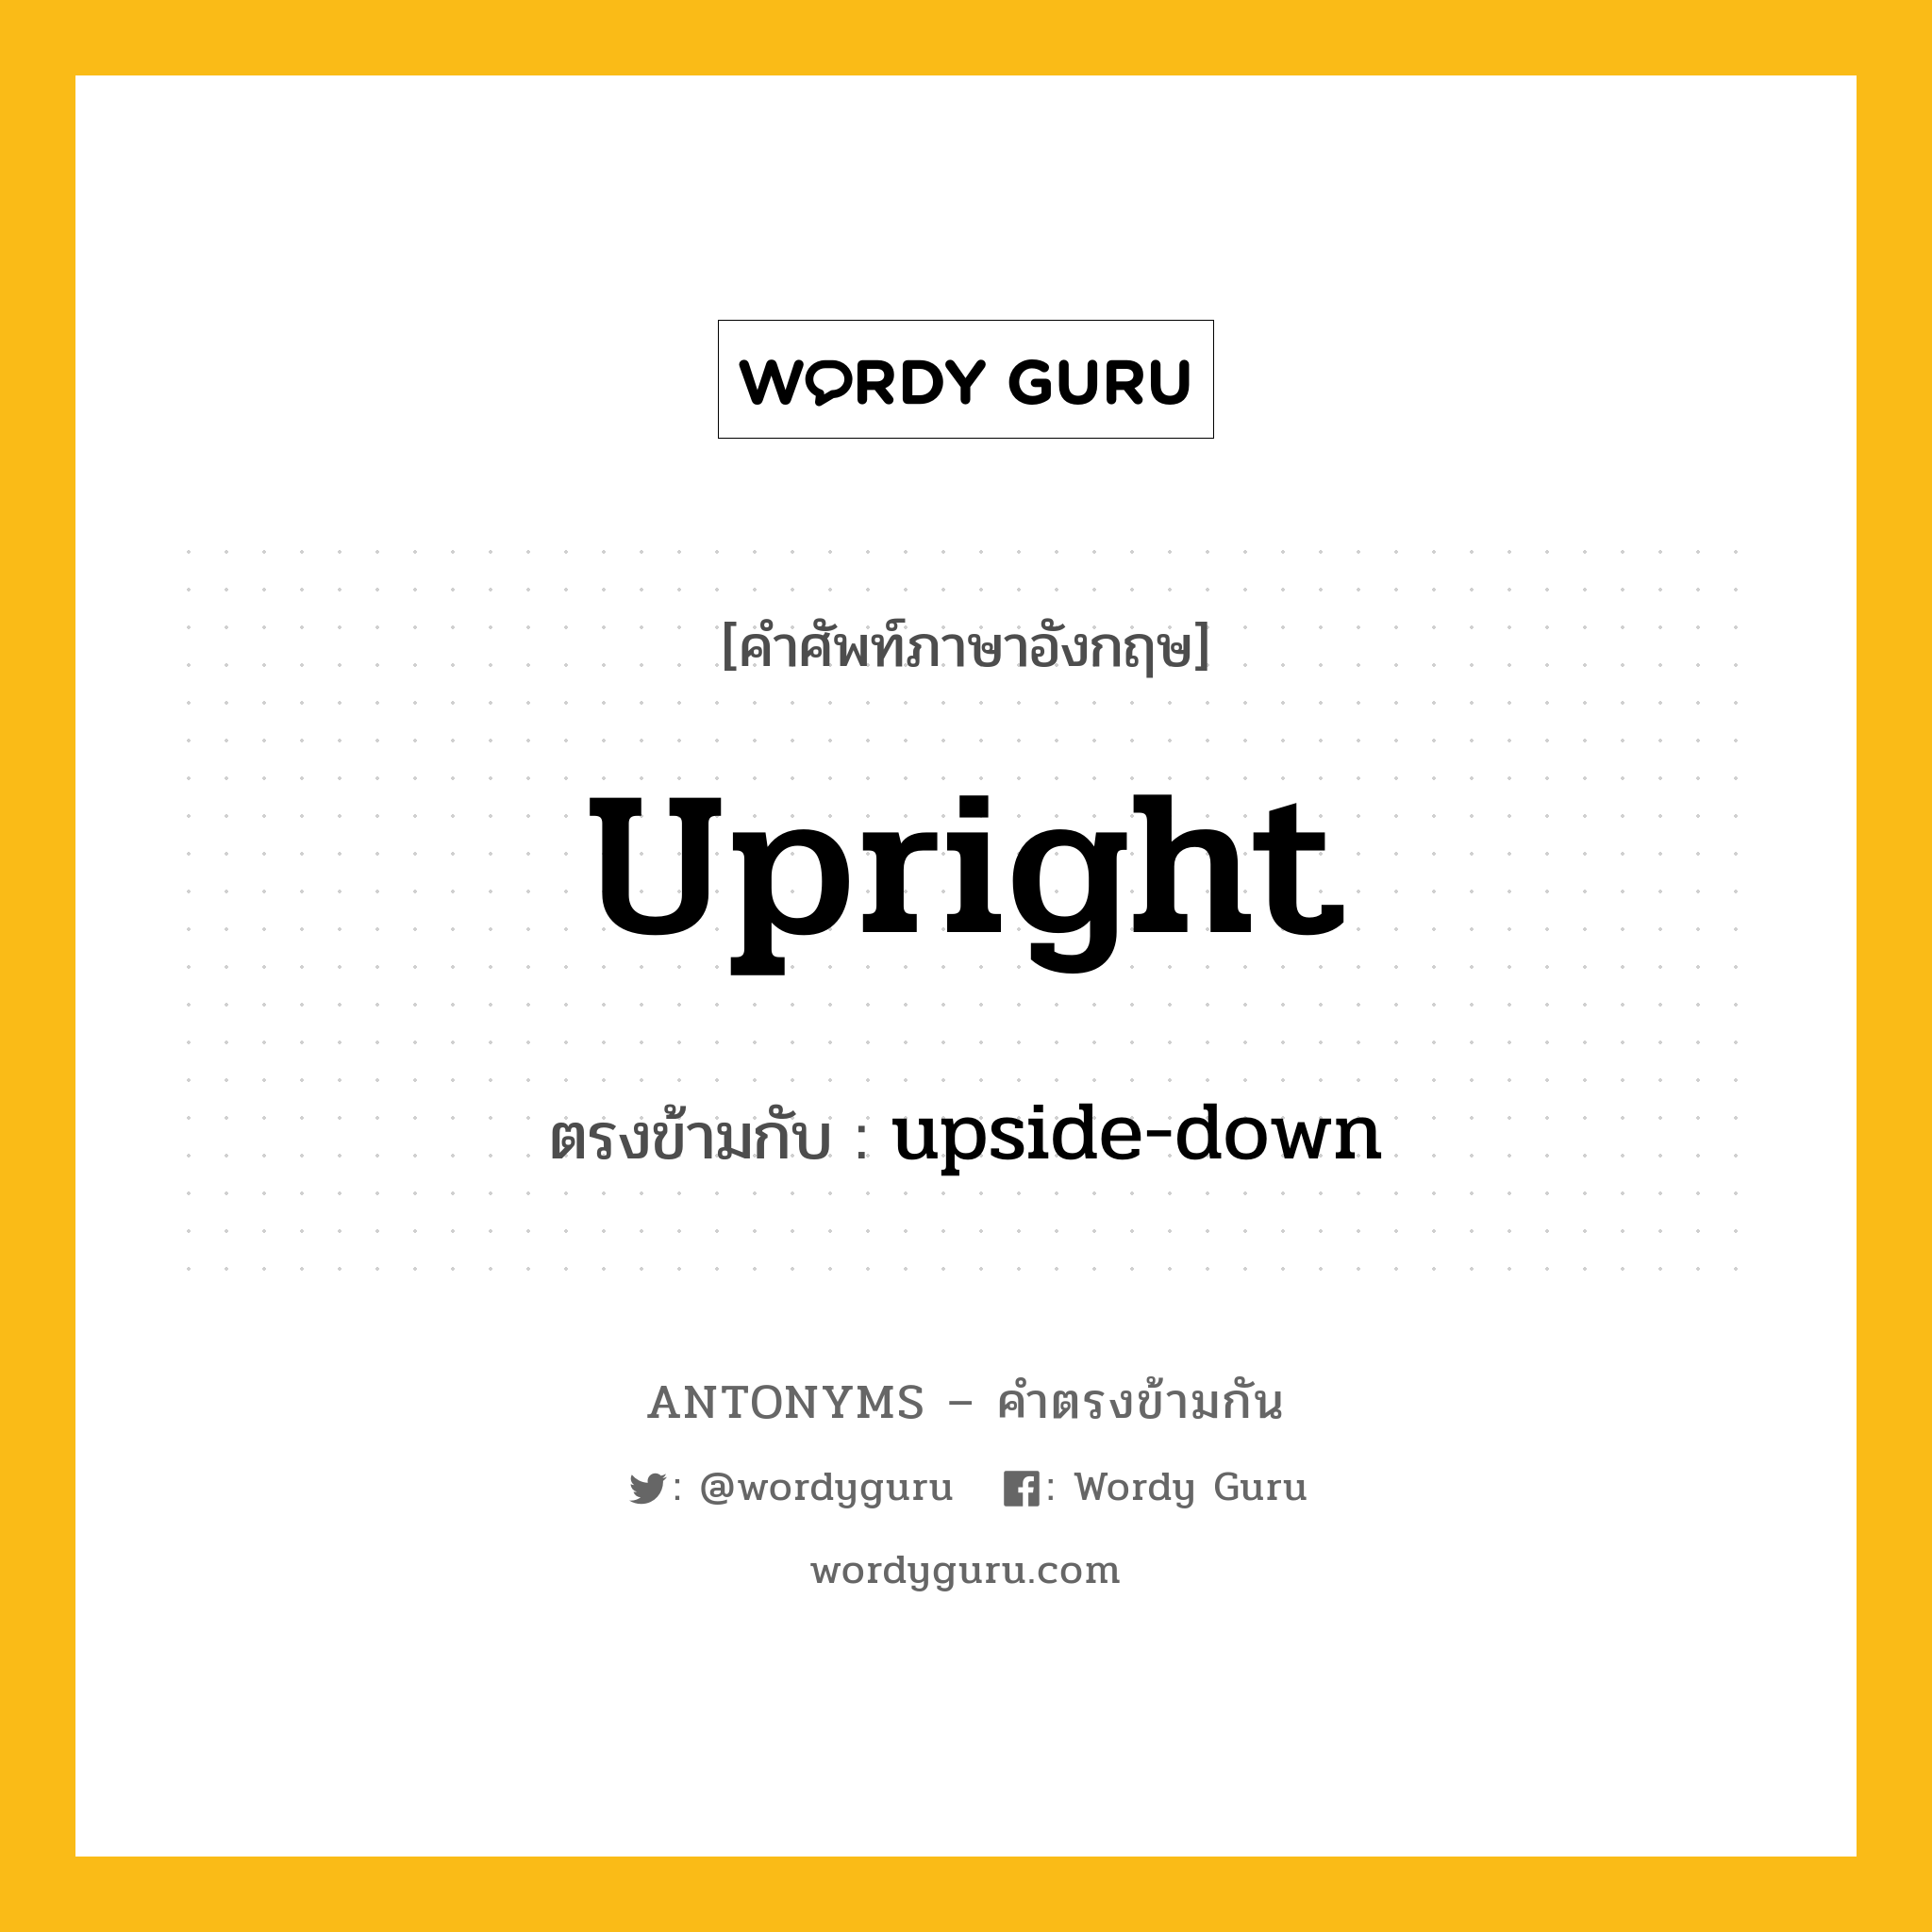 upright เป็นคำตรงข้ามกับคำไหนบ้าง?, คำศัพท์ภาษาอังกฤษที่มีความหมายตรงข้ามกัน upright ตรงข้ามกับ upside-down หมวด upside-down